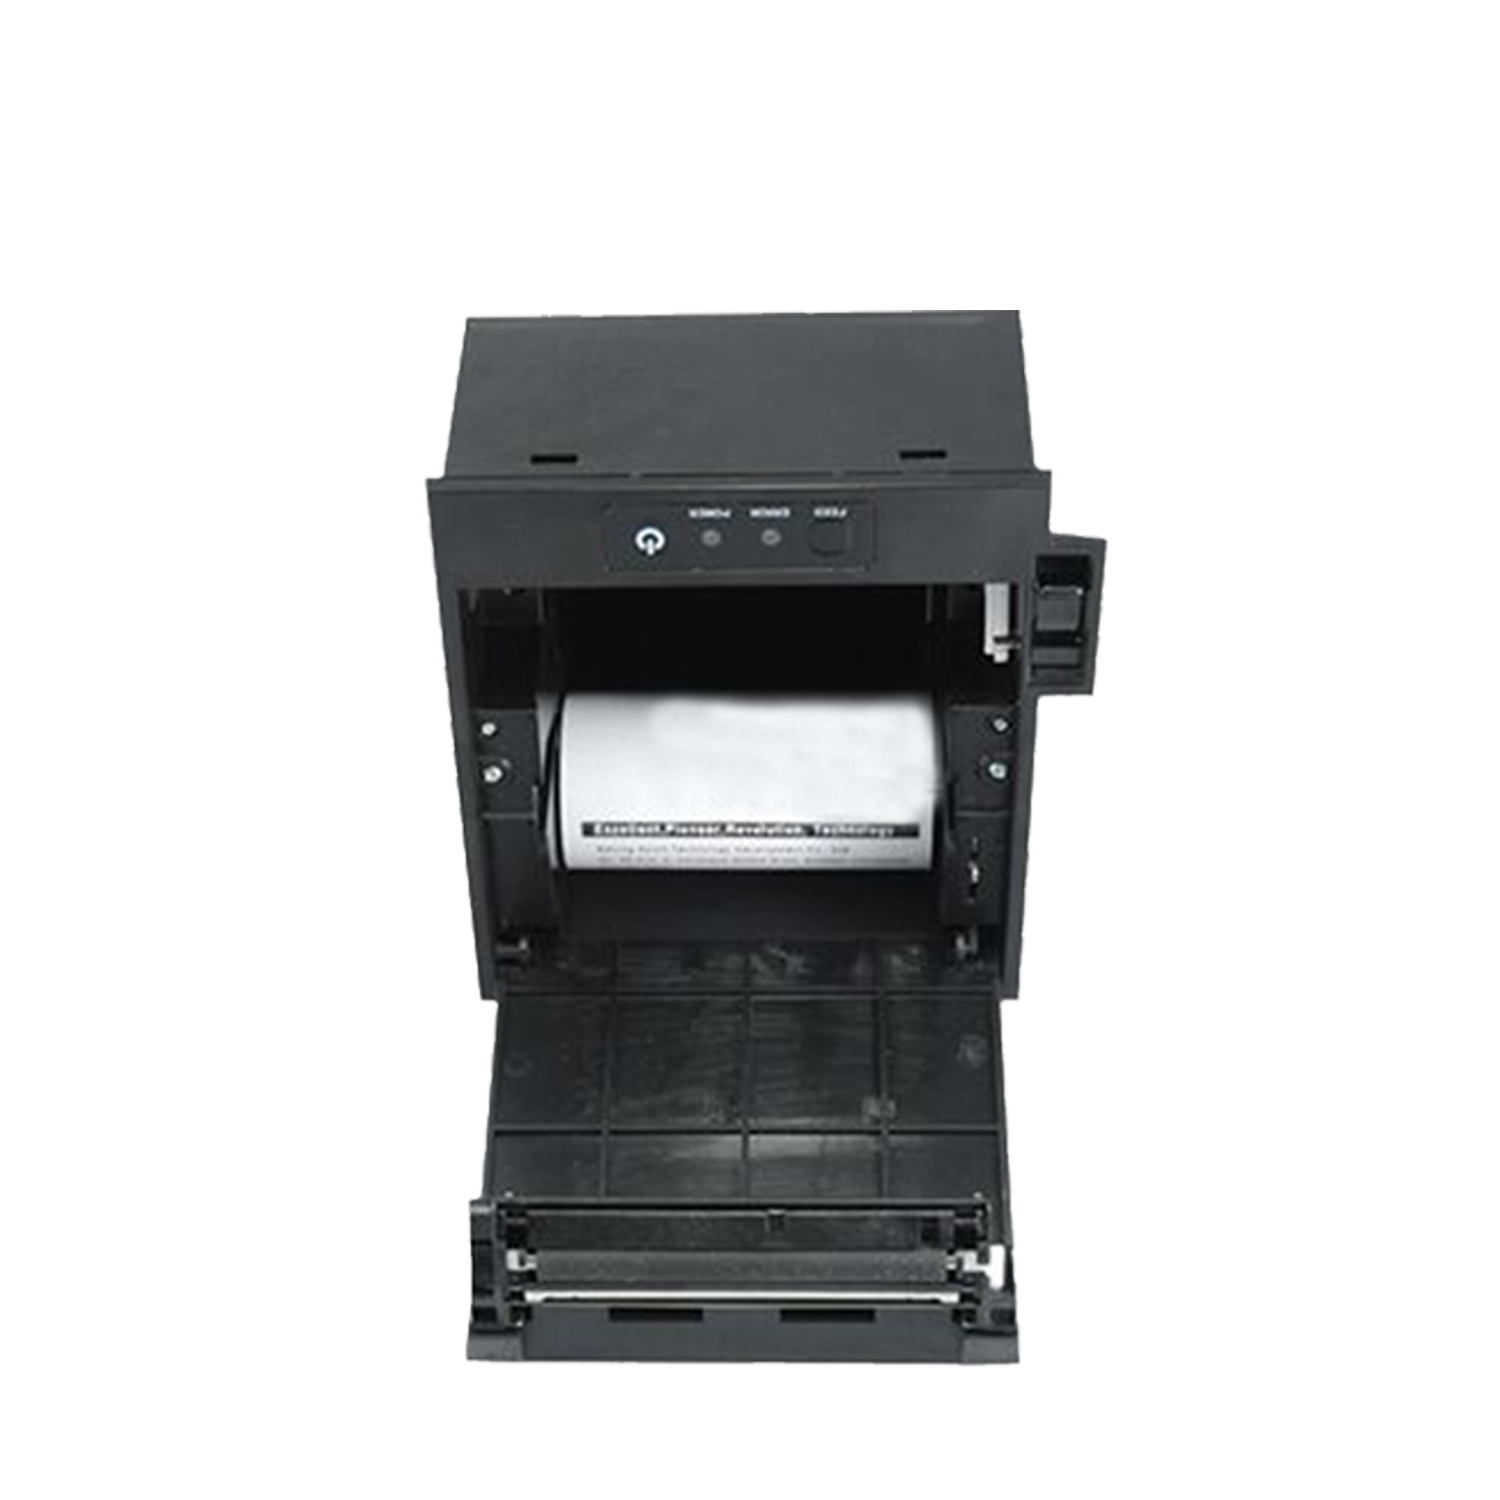 Встроенный термопринтер для киосков, 80 мм. Принтер для монтажа на панели HCC-E4